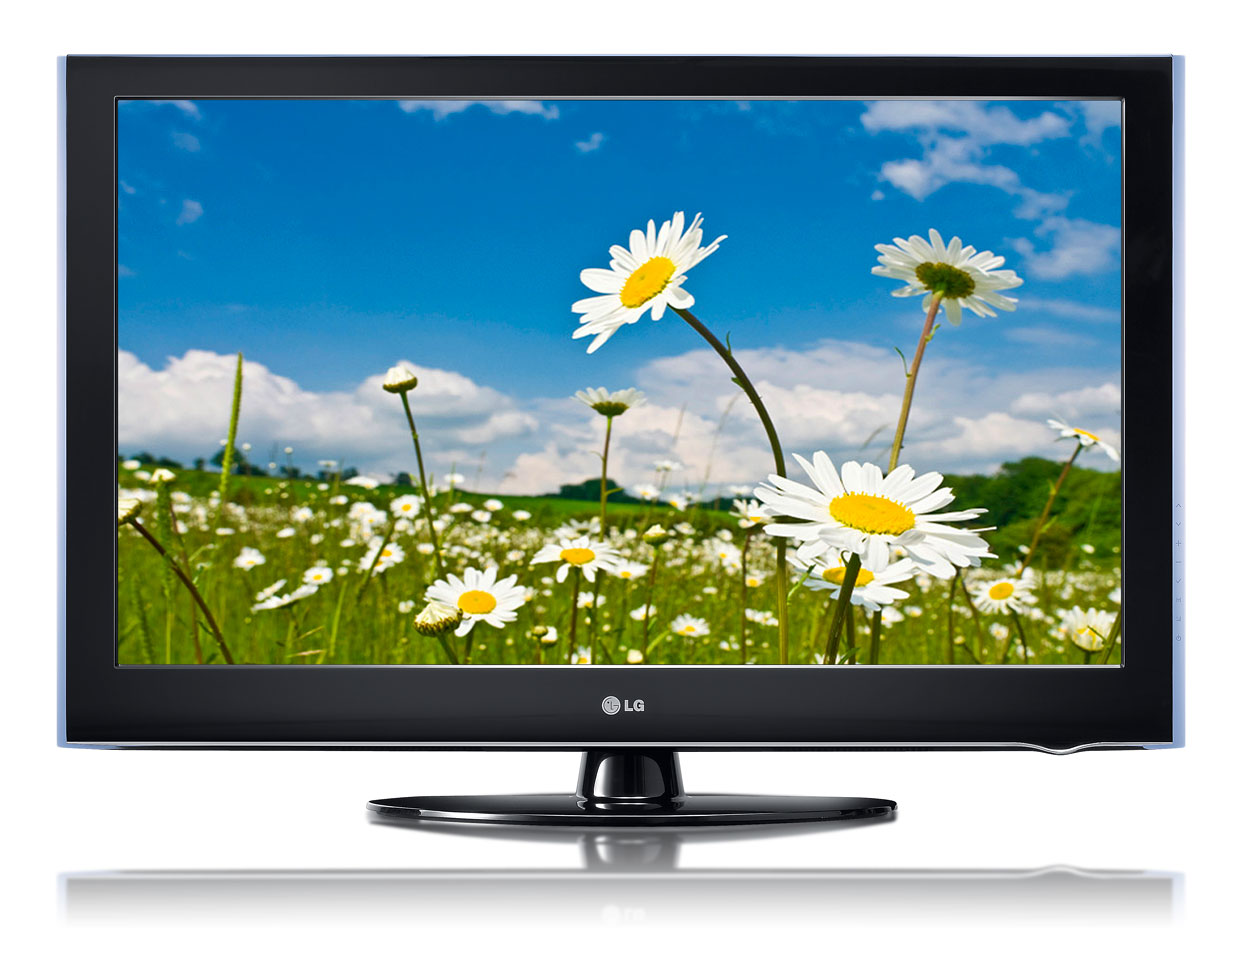 Поддержка lg телевизоров. 32lg5000. Телевизор LG Liquid Crystal display. Телевизор LG 32lh5000. LG 42lcd TV.